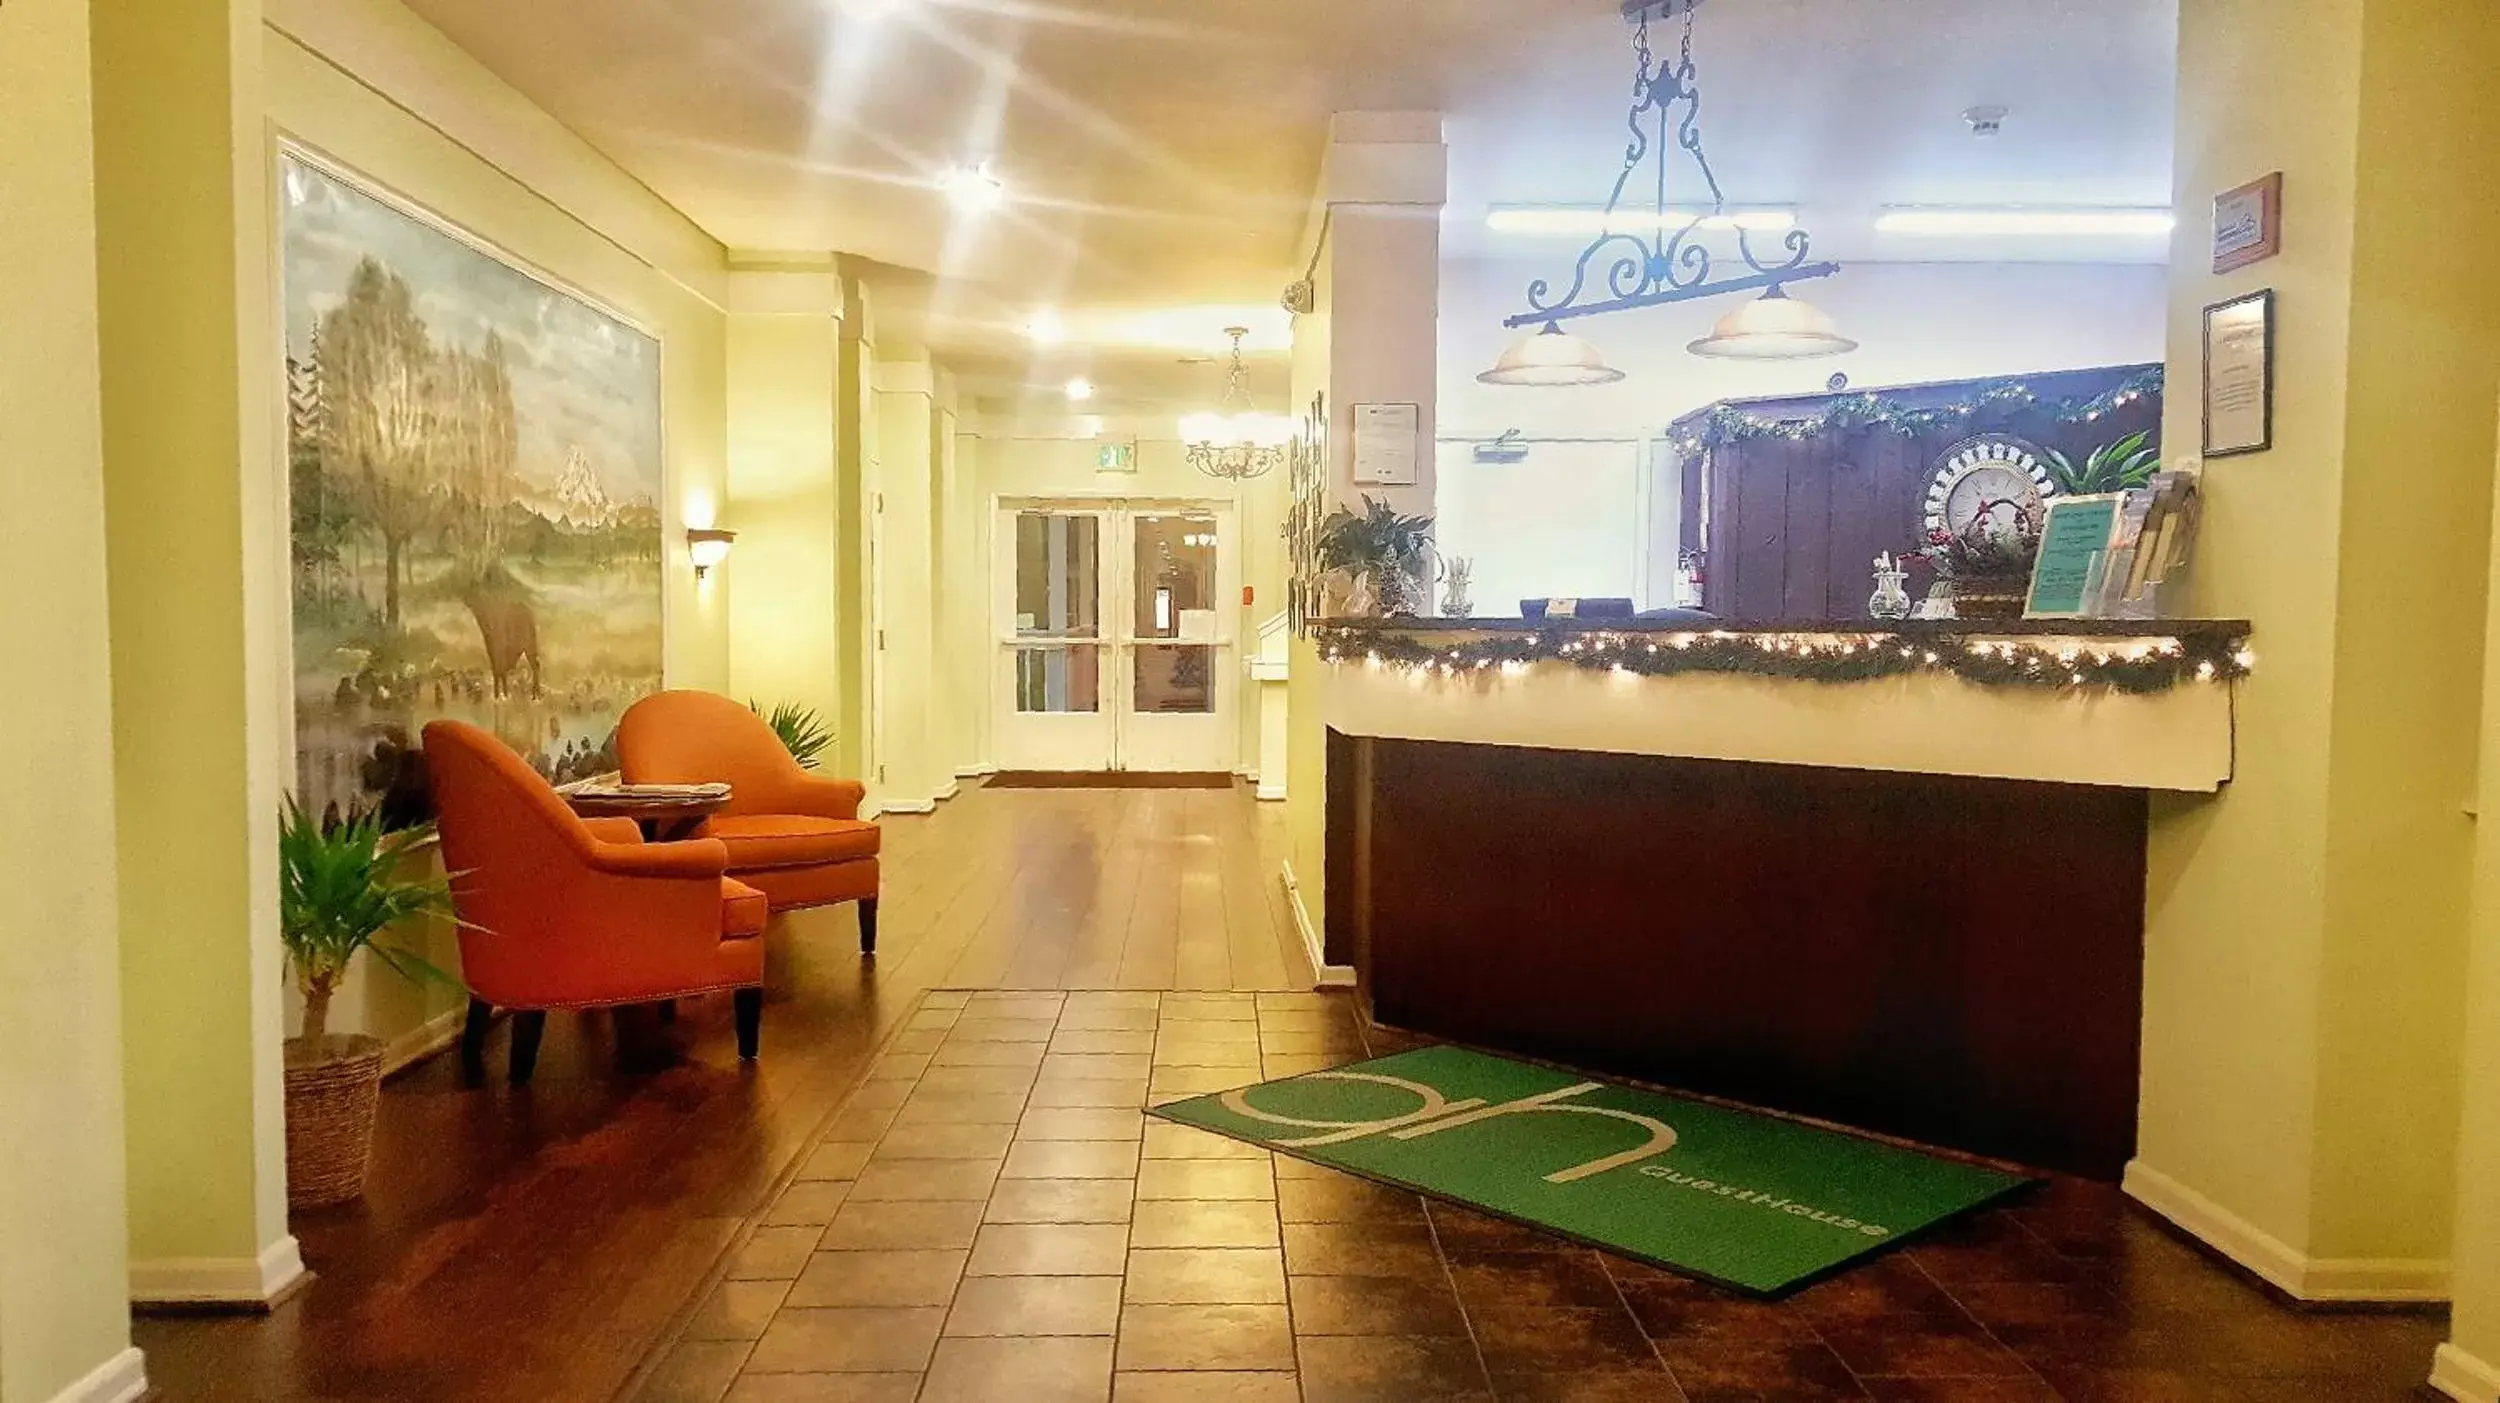 Lobby or reception, Lobby/Reception in GuestHouse Inn Enumclaw